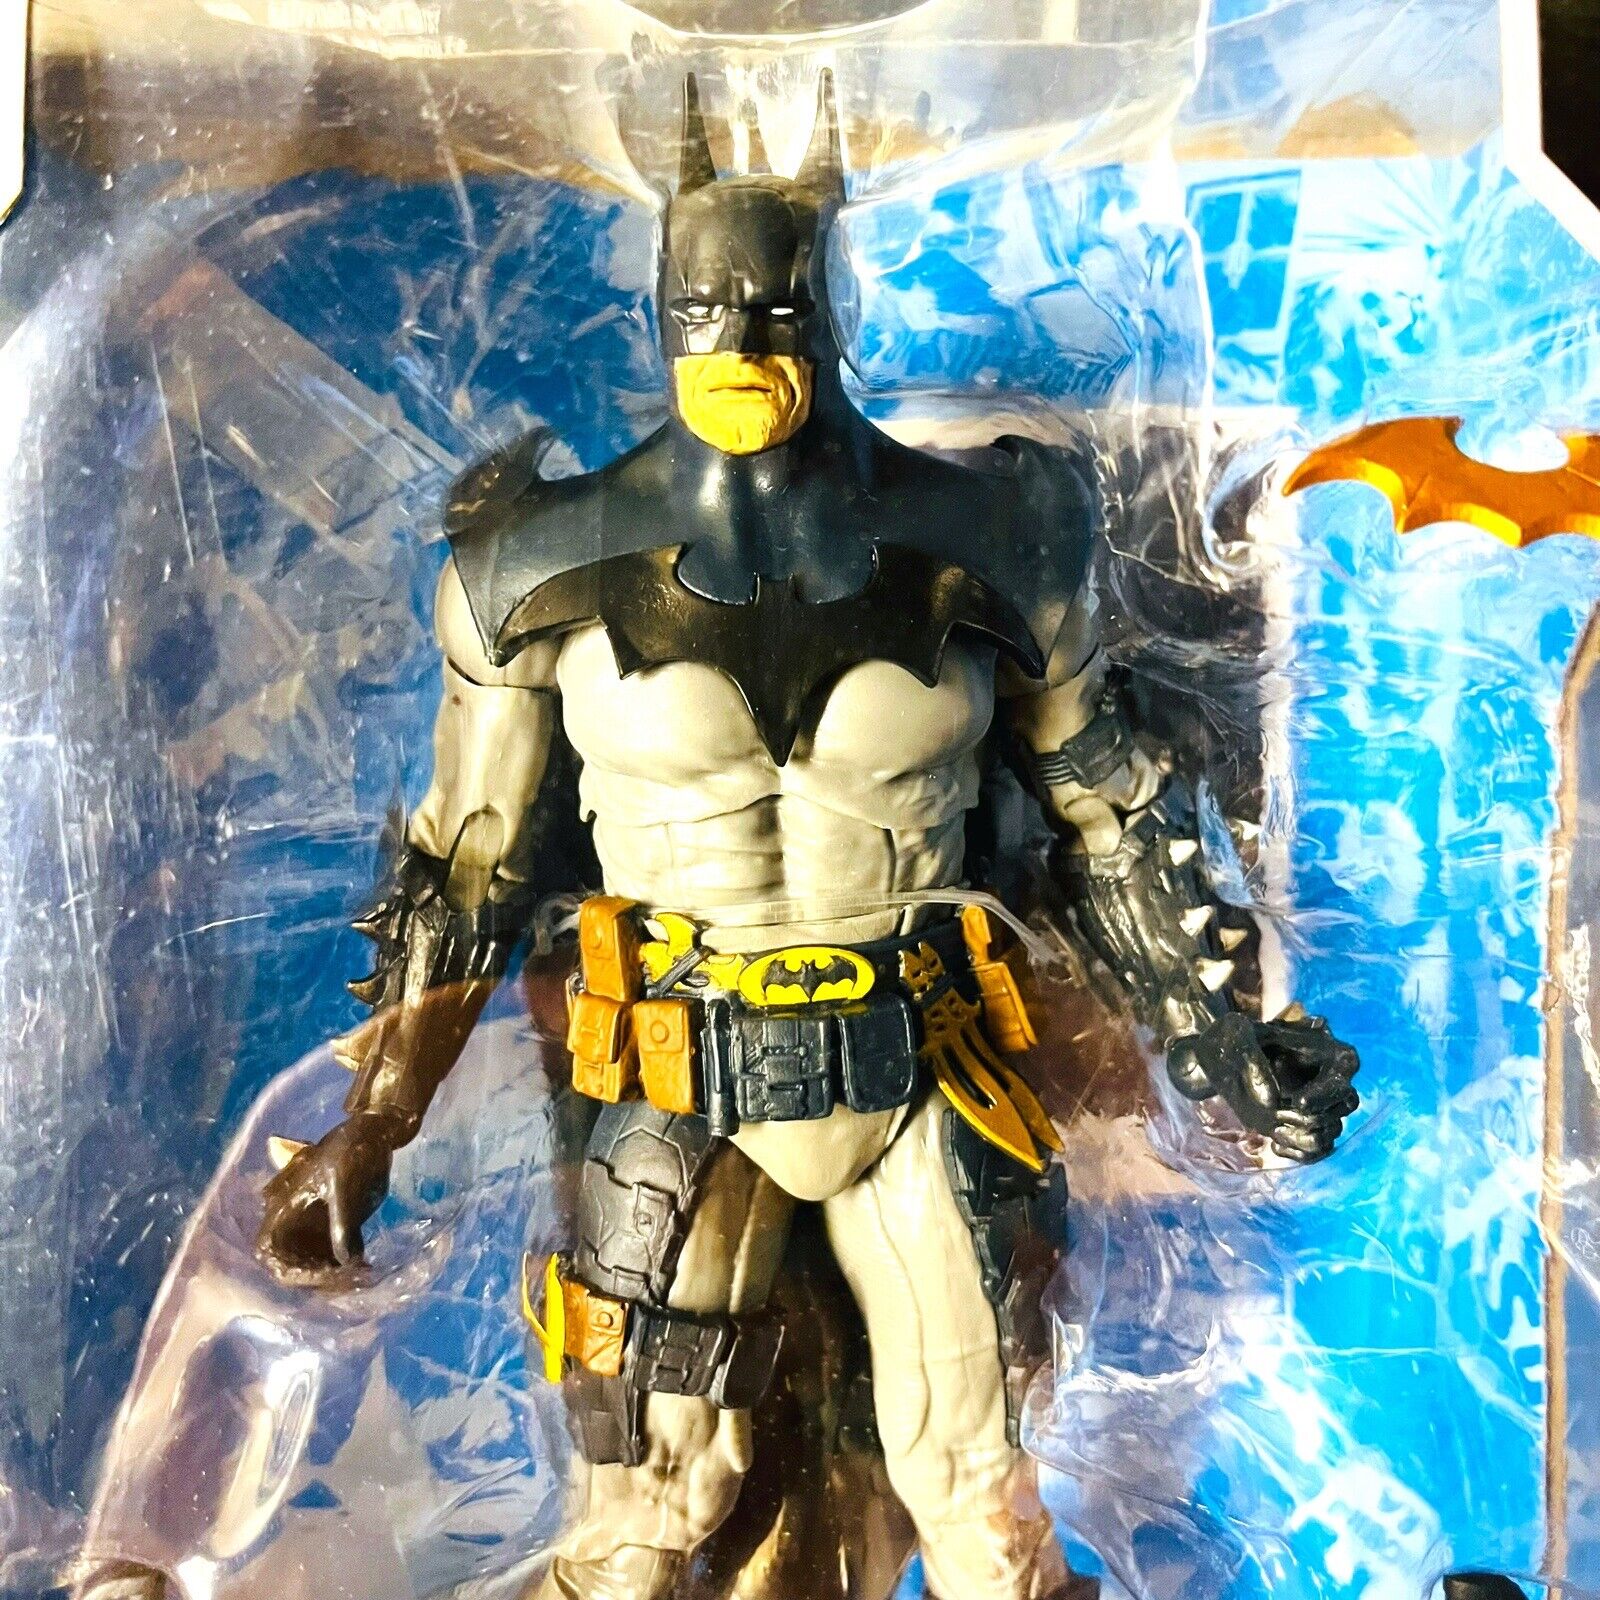 McFarlane Batman DC Multiverse 7 inch Figure Designed by Todd Blue Version FAST McFarlane Toys 15006 - фотография #3